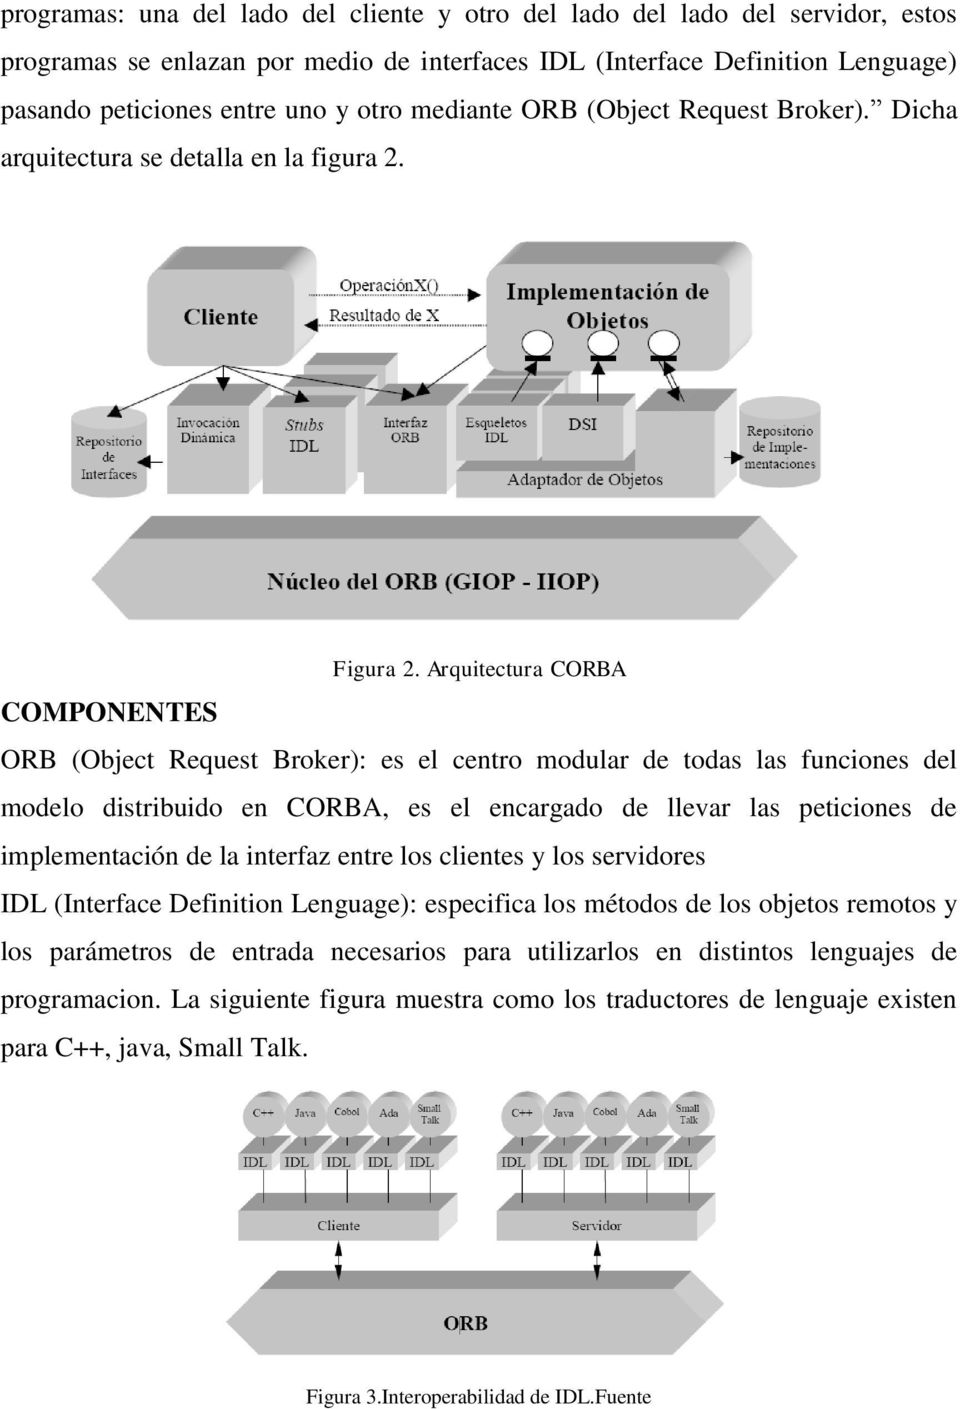 Arquitectura CORBA COMPONENTES ORB (Object Request Broker): es el centro modular de todas las funciones del modelo distribuido en CORBA, es el encargado de llevar las peticiones de implementación de